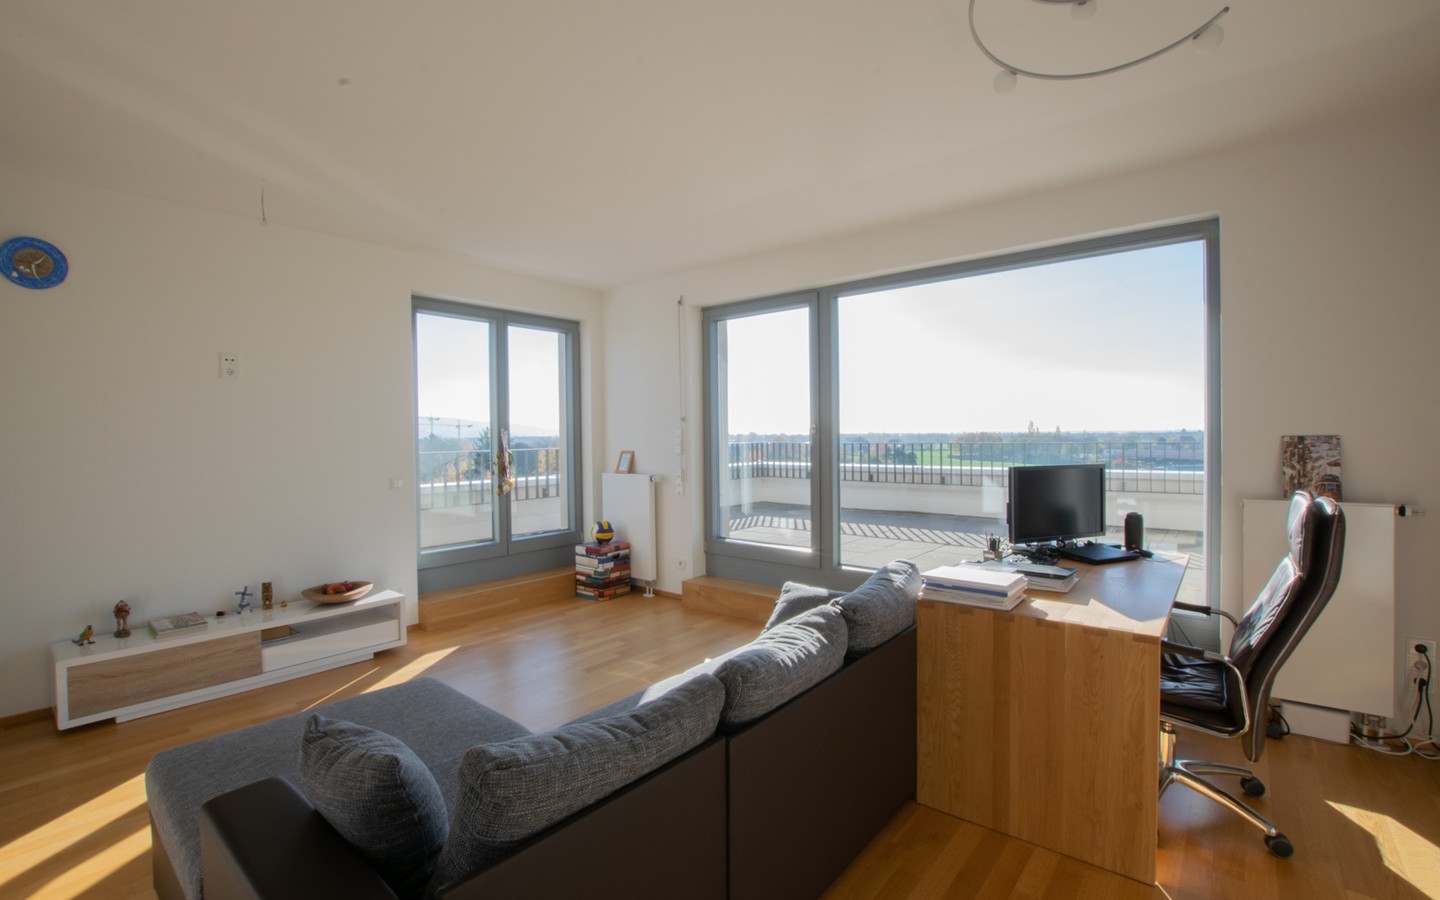 Wohnzimmer - Mit phänomenalem Panorama-Blick: Attraktive Penthouse-Wohnung an der Bahnstadt-Promenade